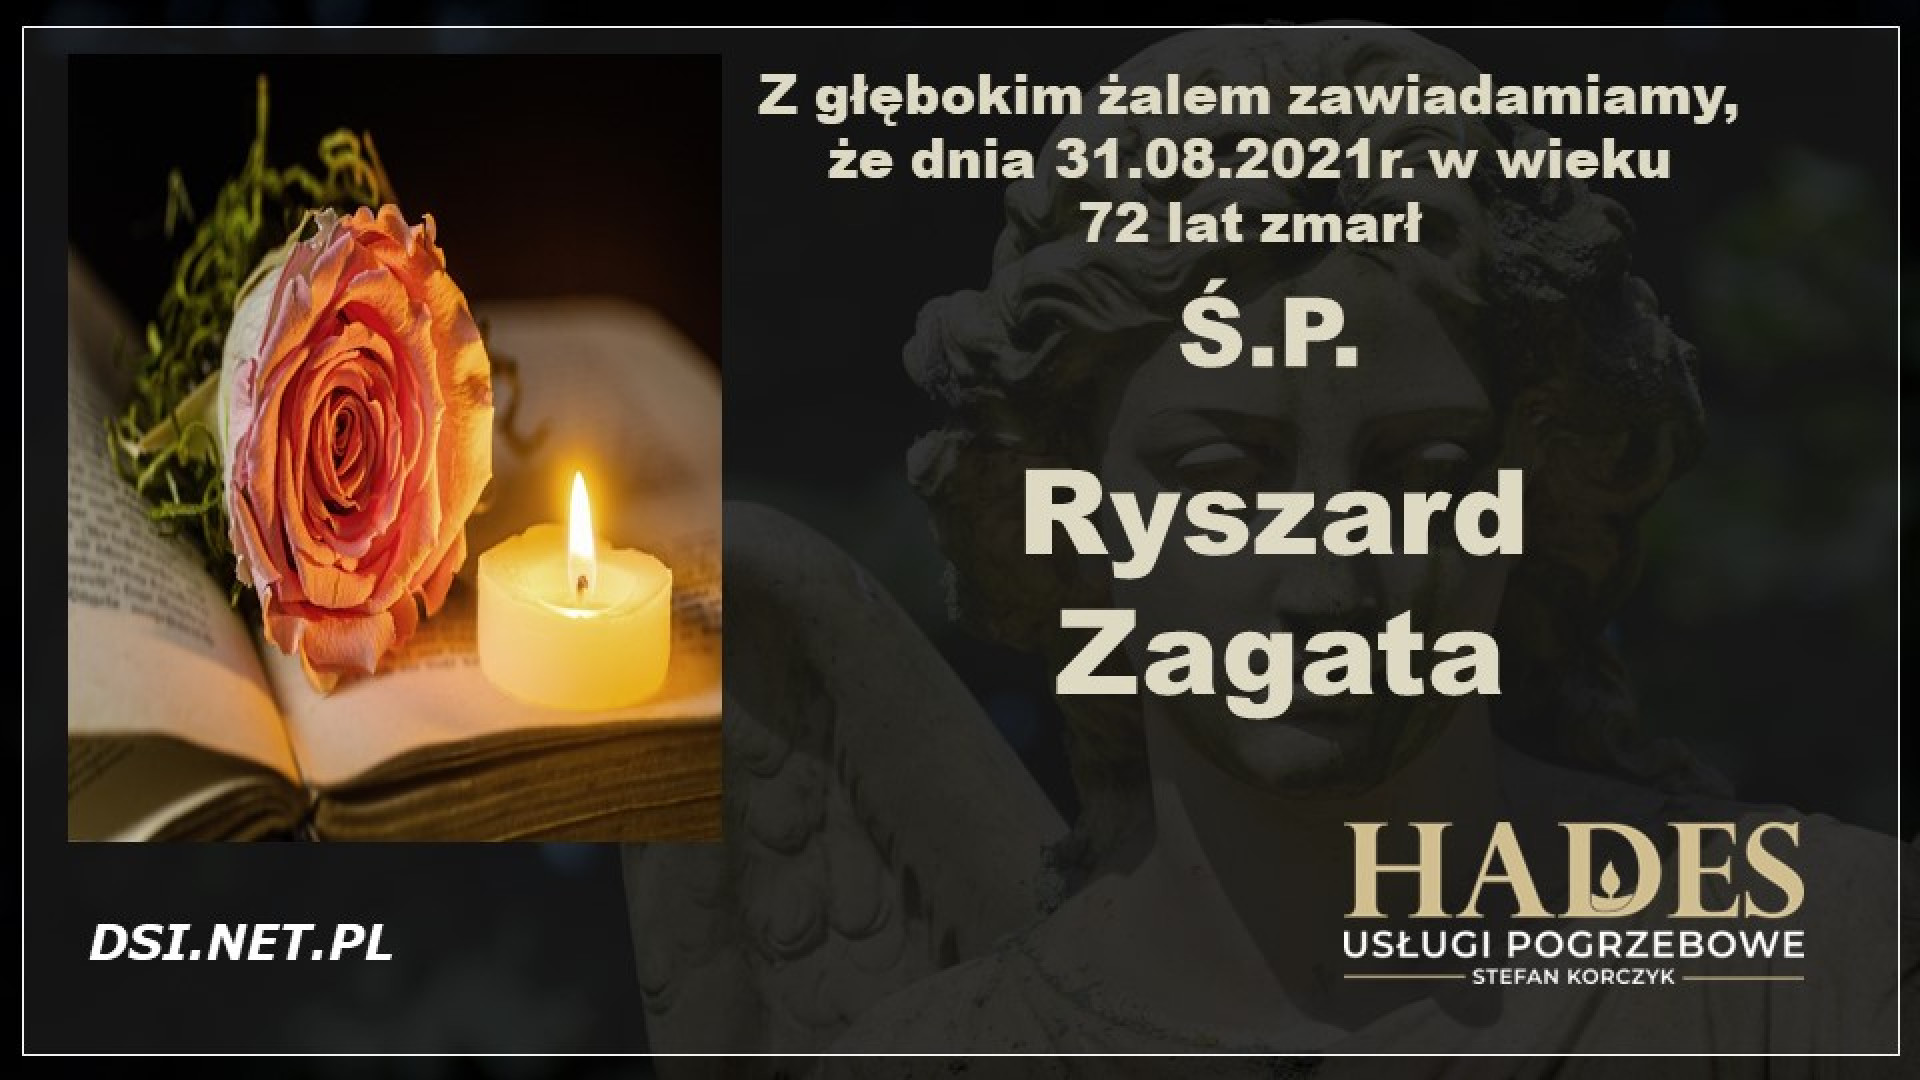 Ś.P. Ryszard Zagata